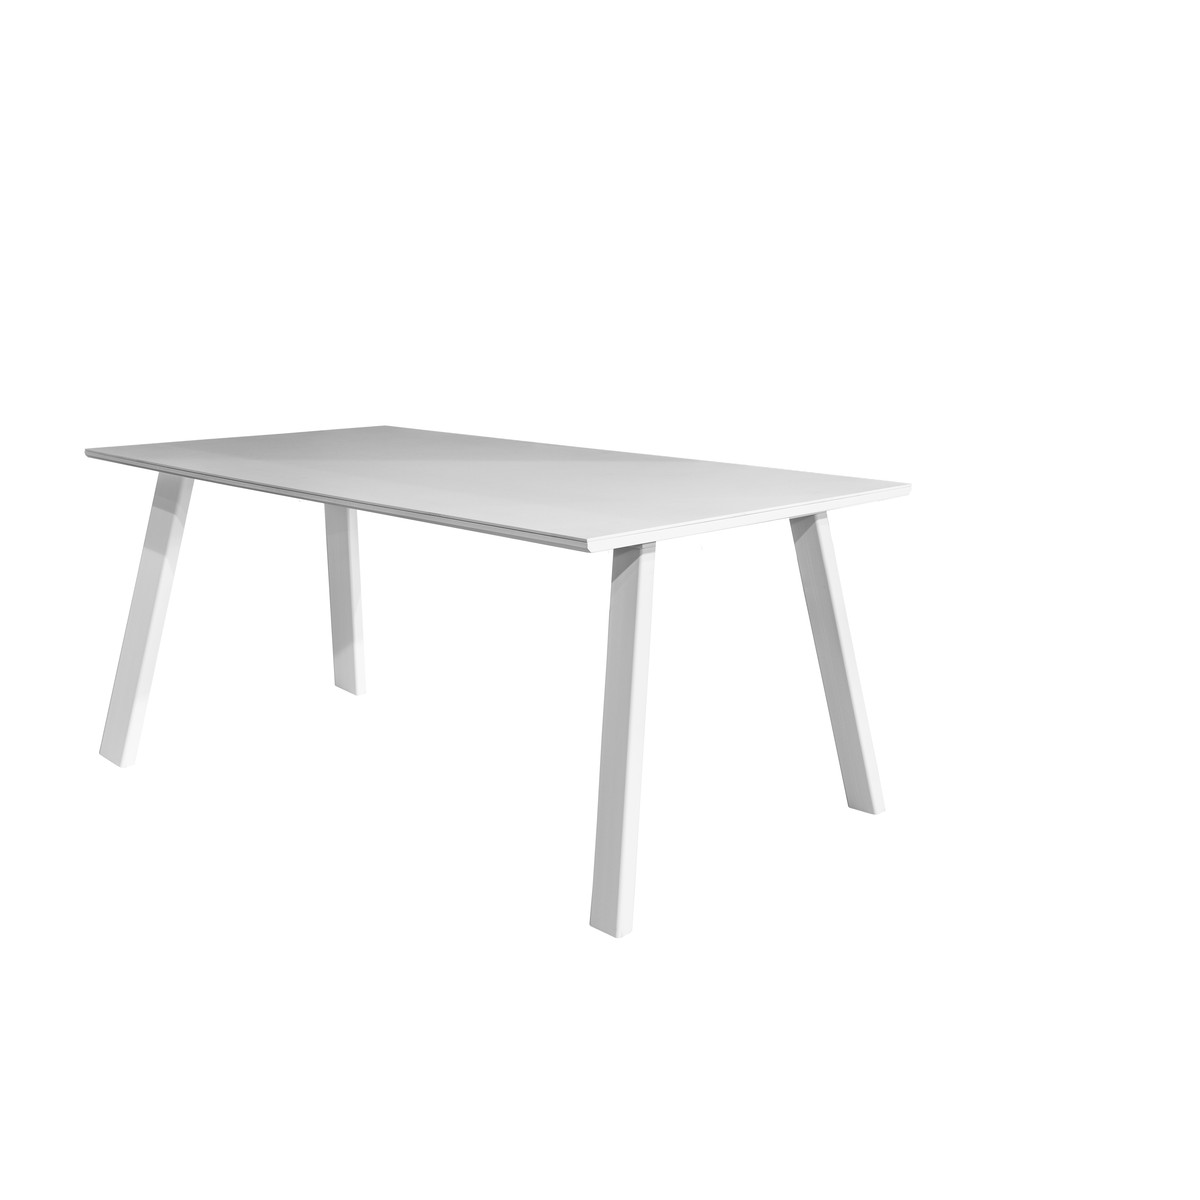   Table Spisa T10 Easy rectangle  140x100x75cm